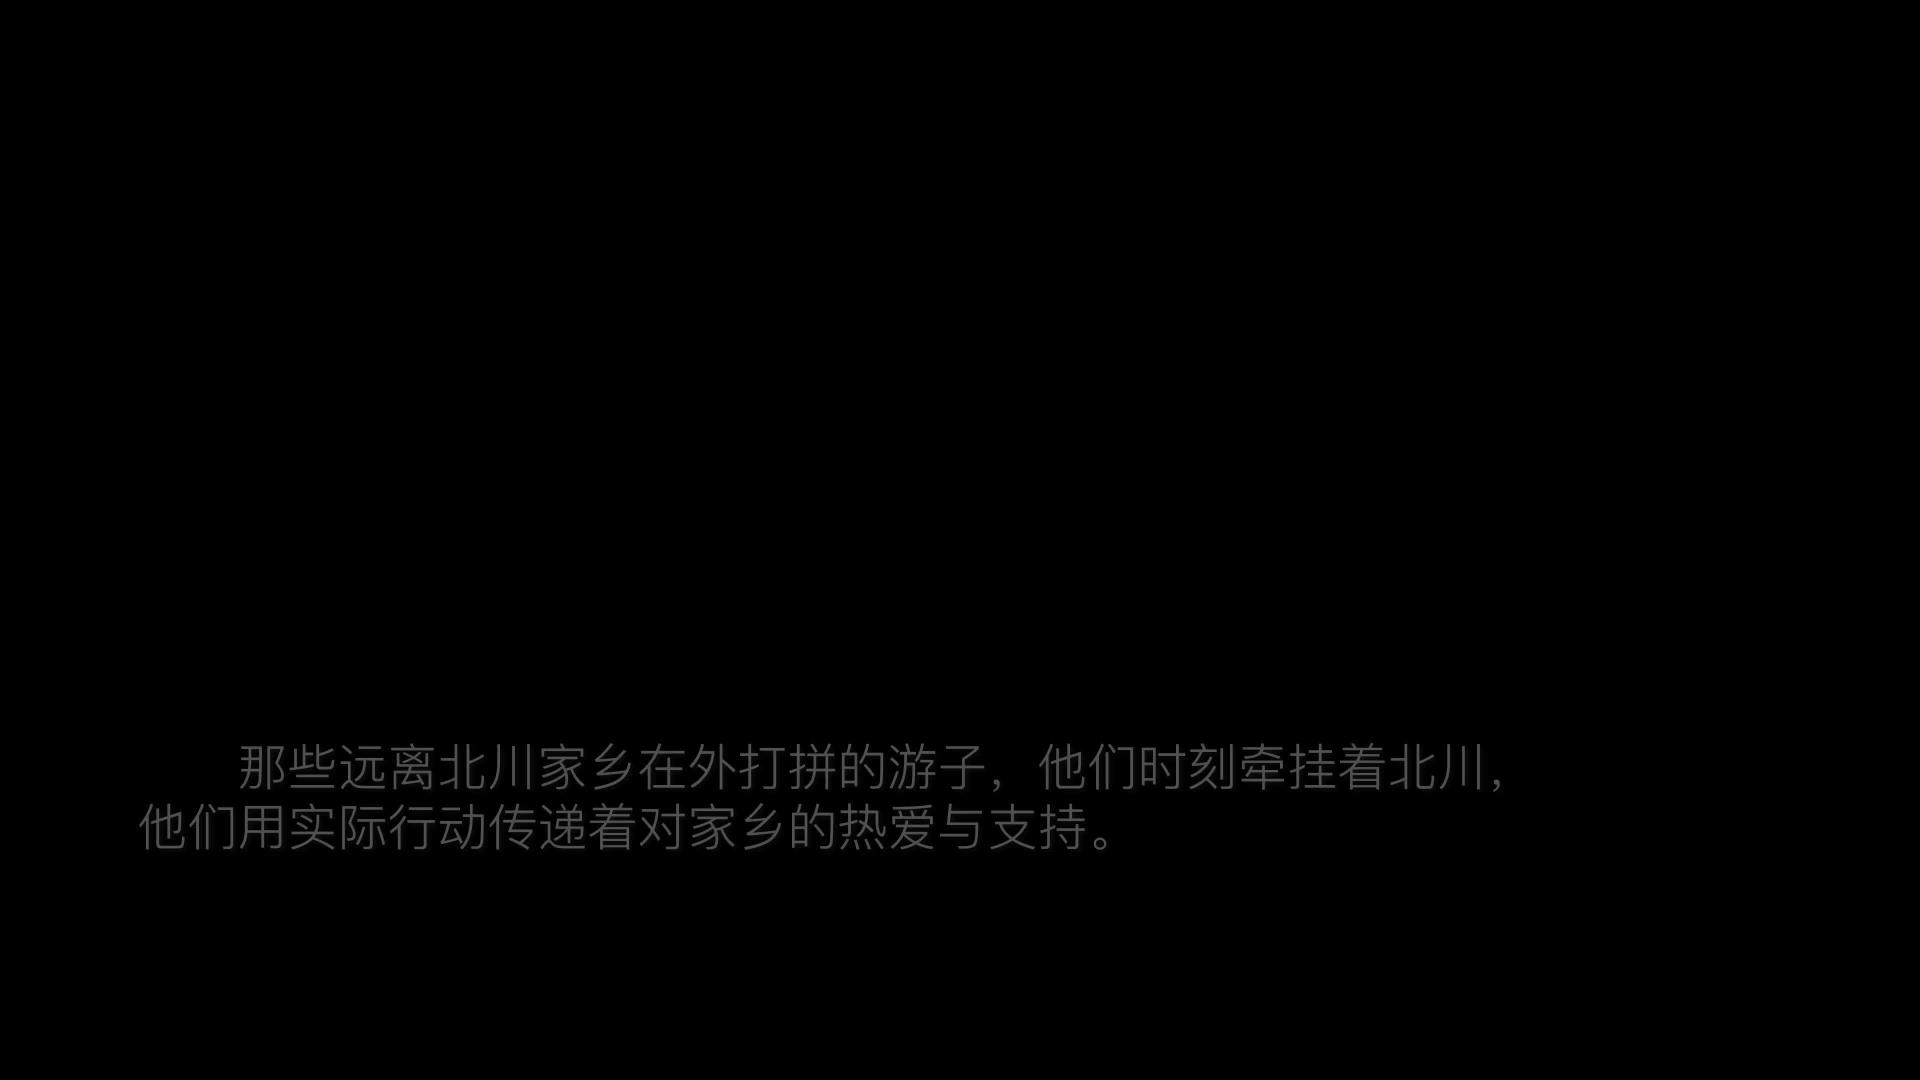 北川羌族自治县旅拍纪录片系列《云朵深处是我家》：01、最是家乡味 能抚凡人心